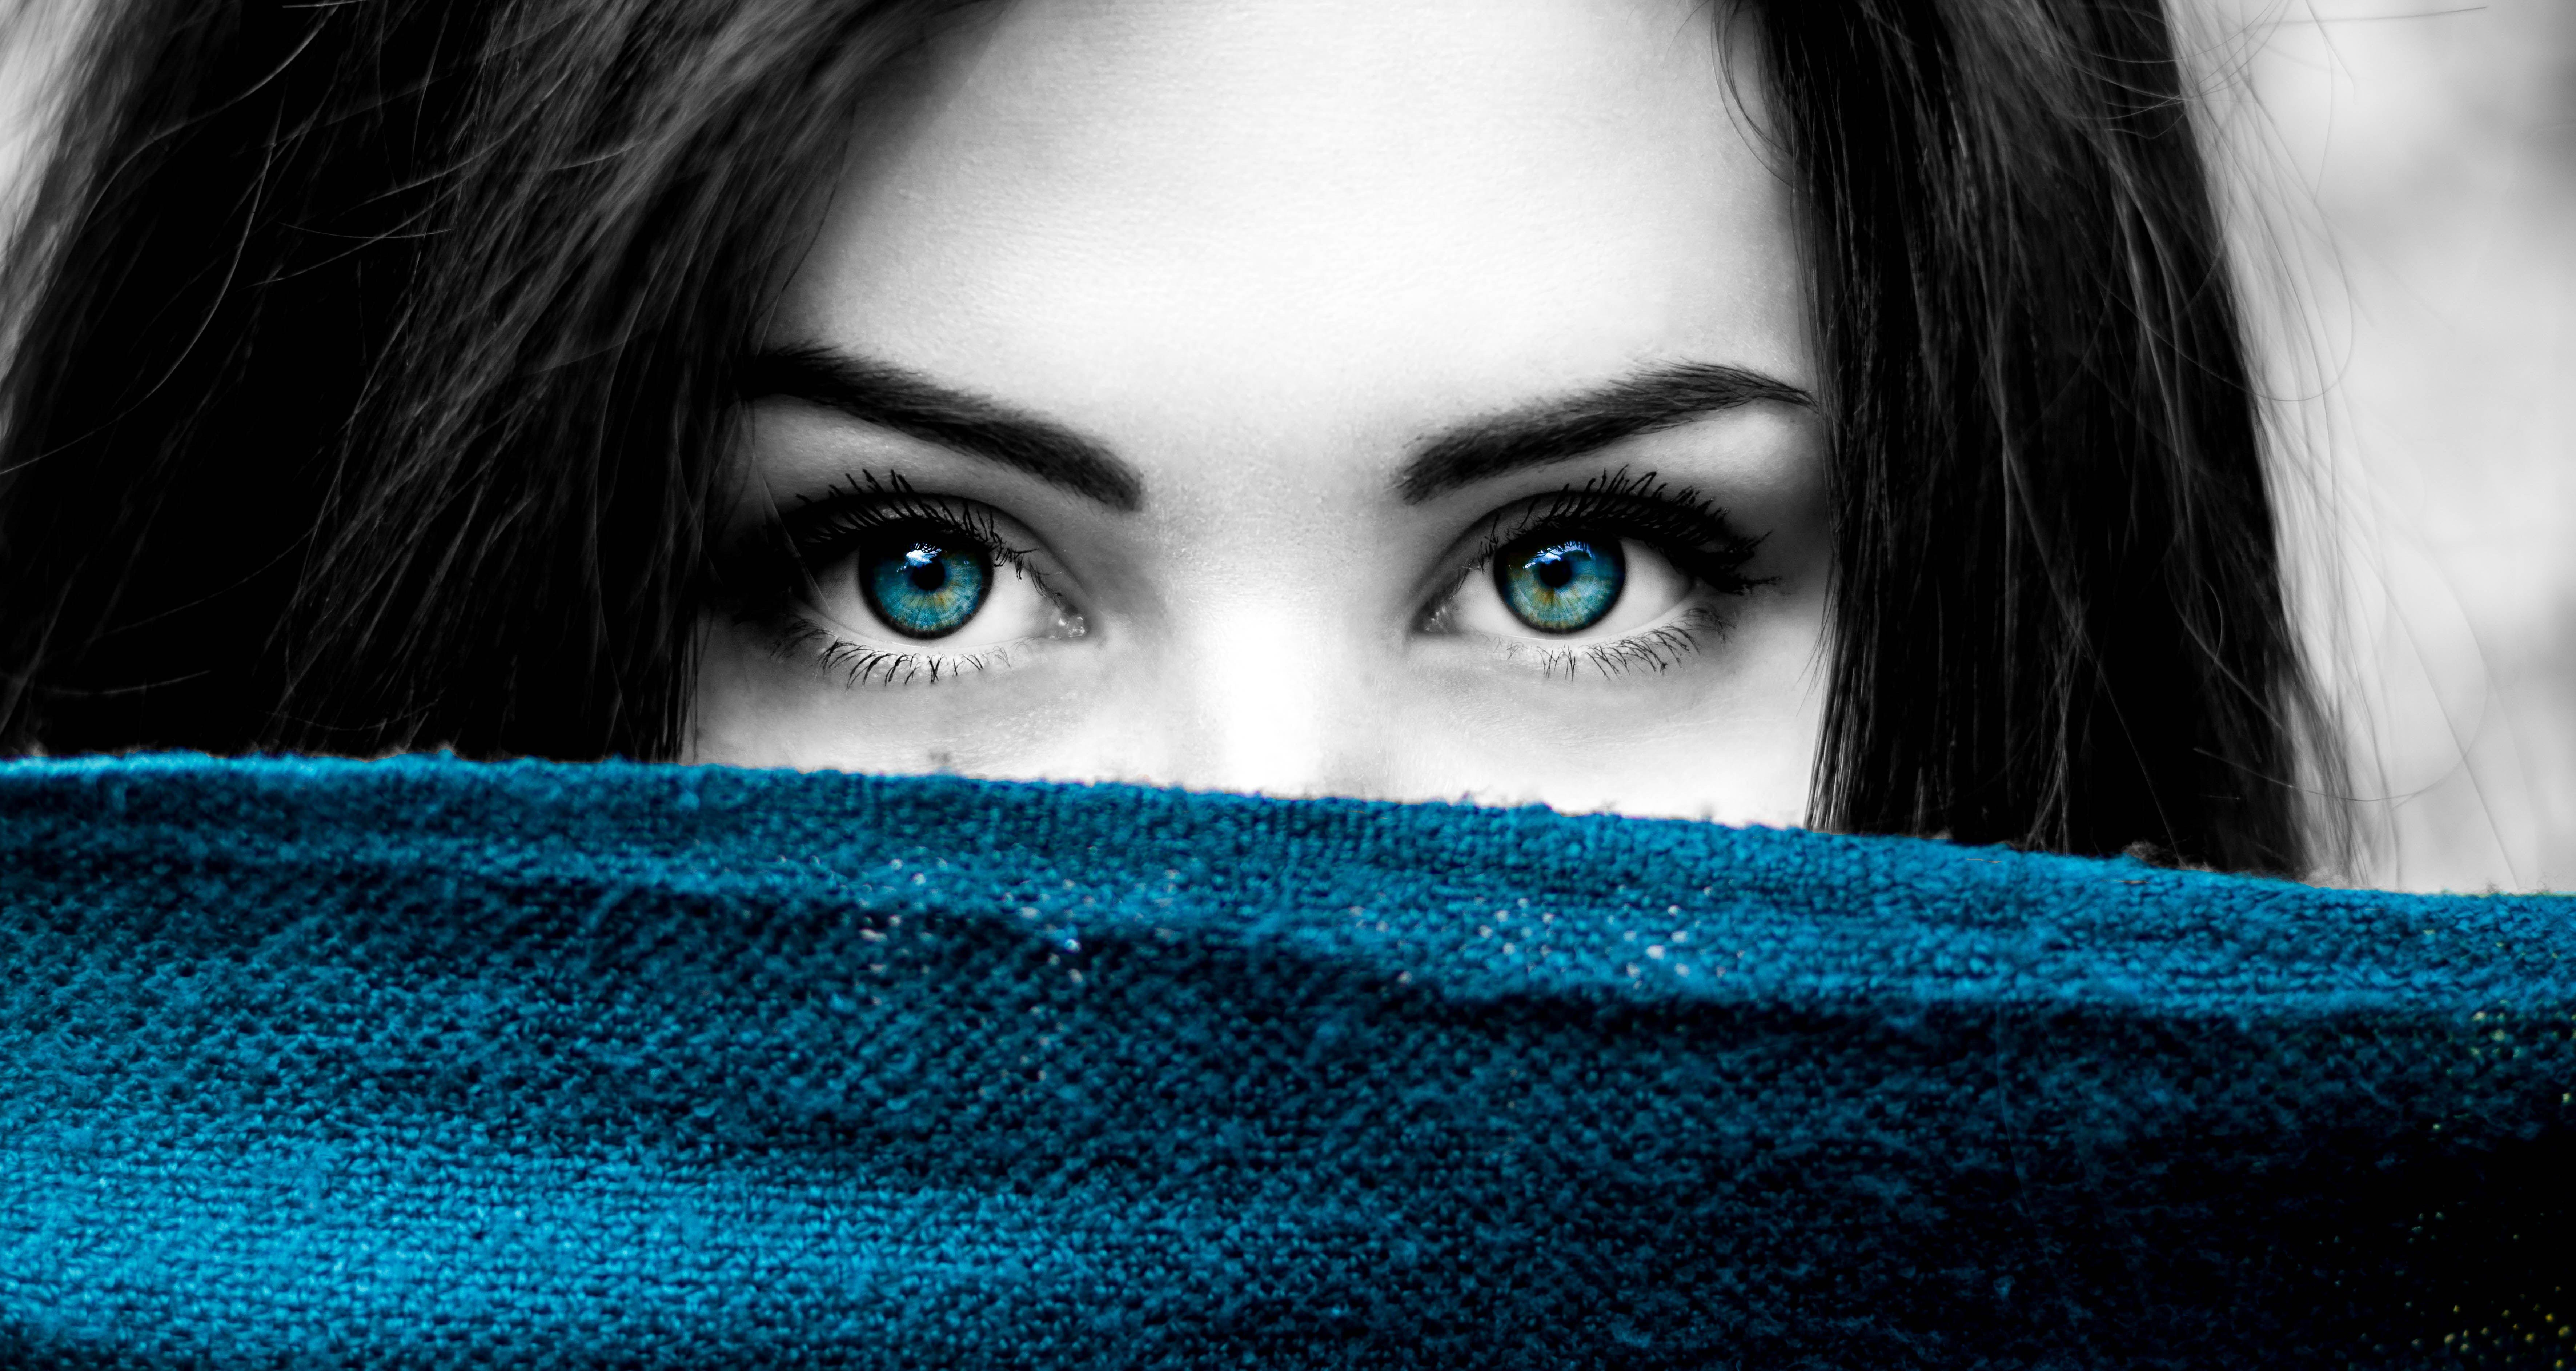 Blue and White Eye Logo - Free stock photo of black-and-white, blue, blue eyes